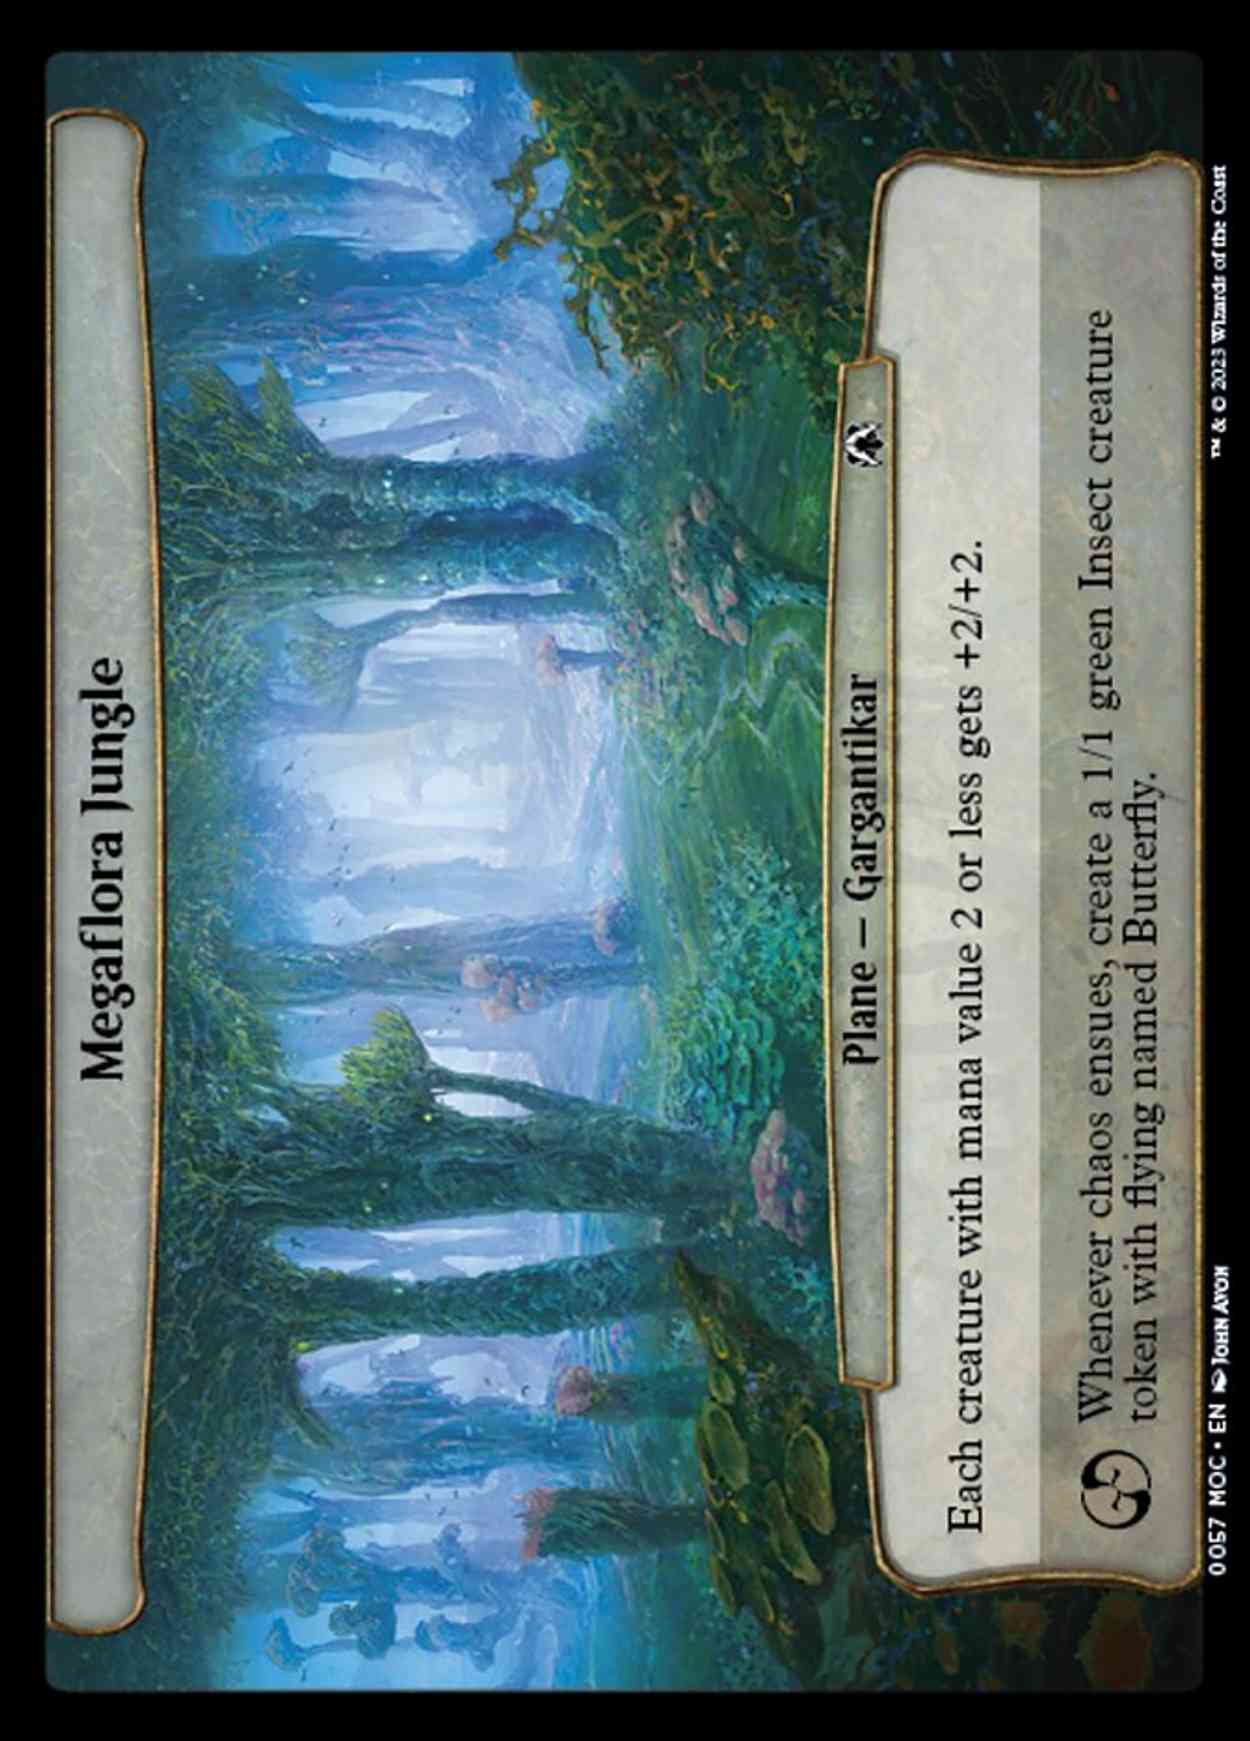 Megaflora Jungle magic card front